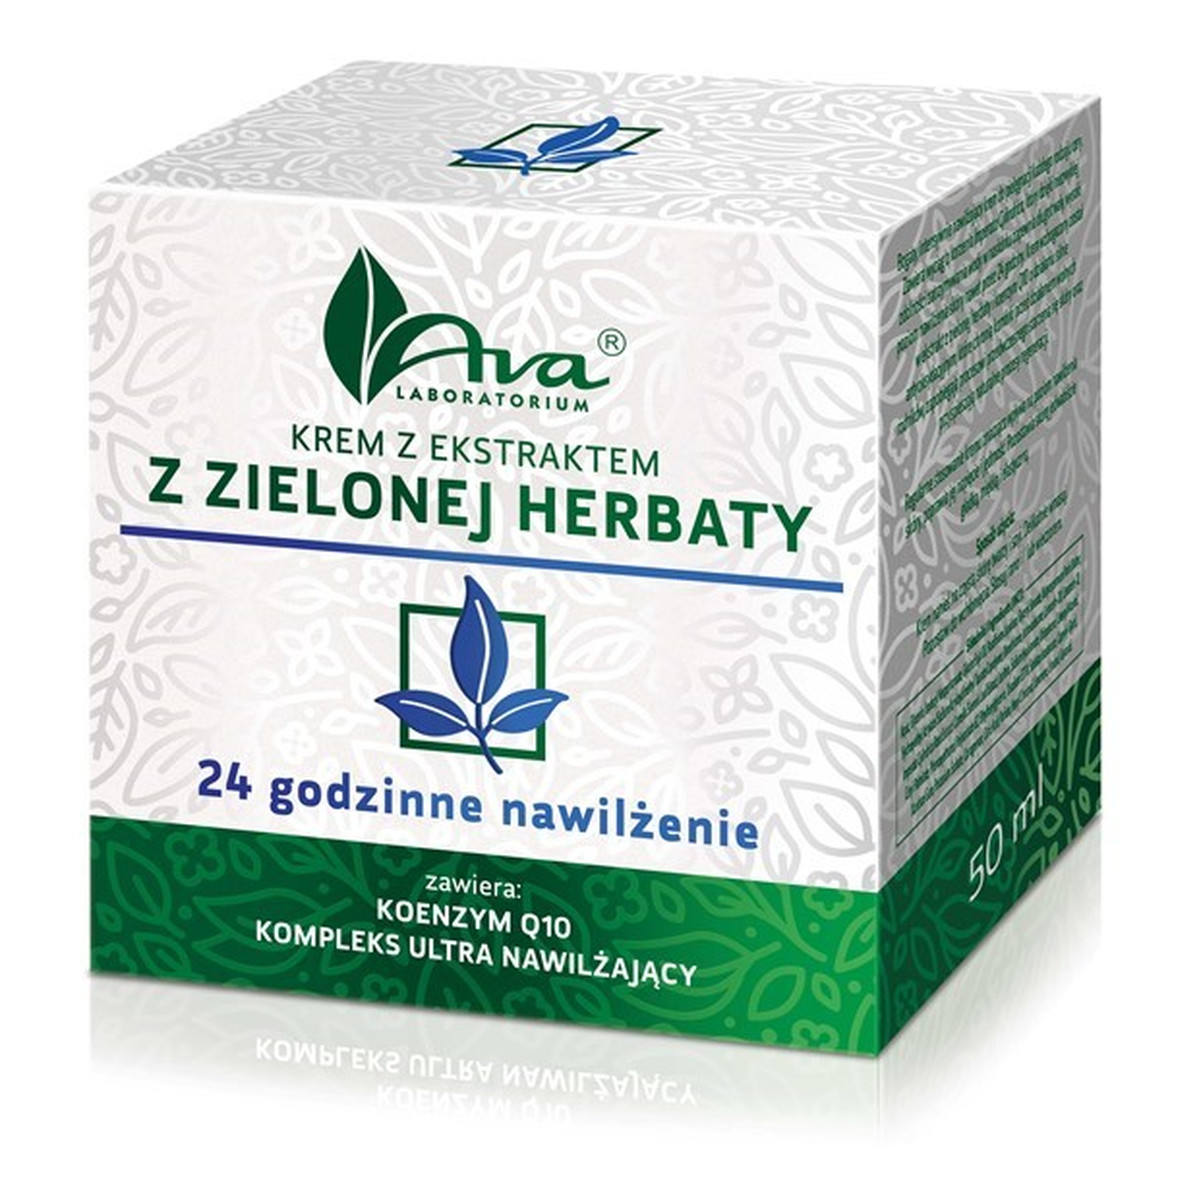 Ava Laboratorium Krem z ekstraktem z zielonej herbaty 24 Godzinne Nawilżenie 50ml